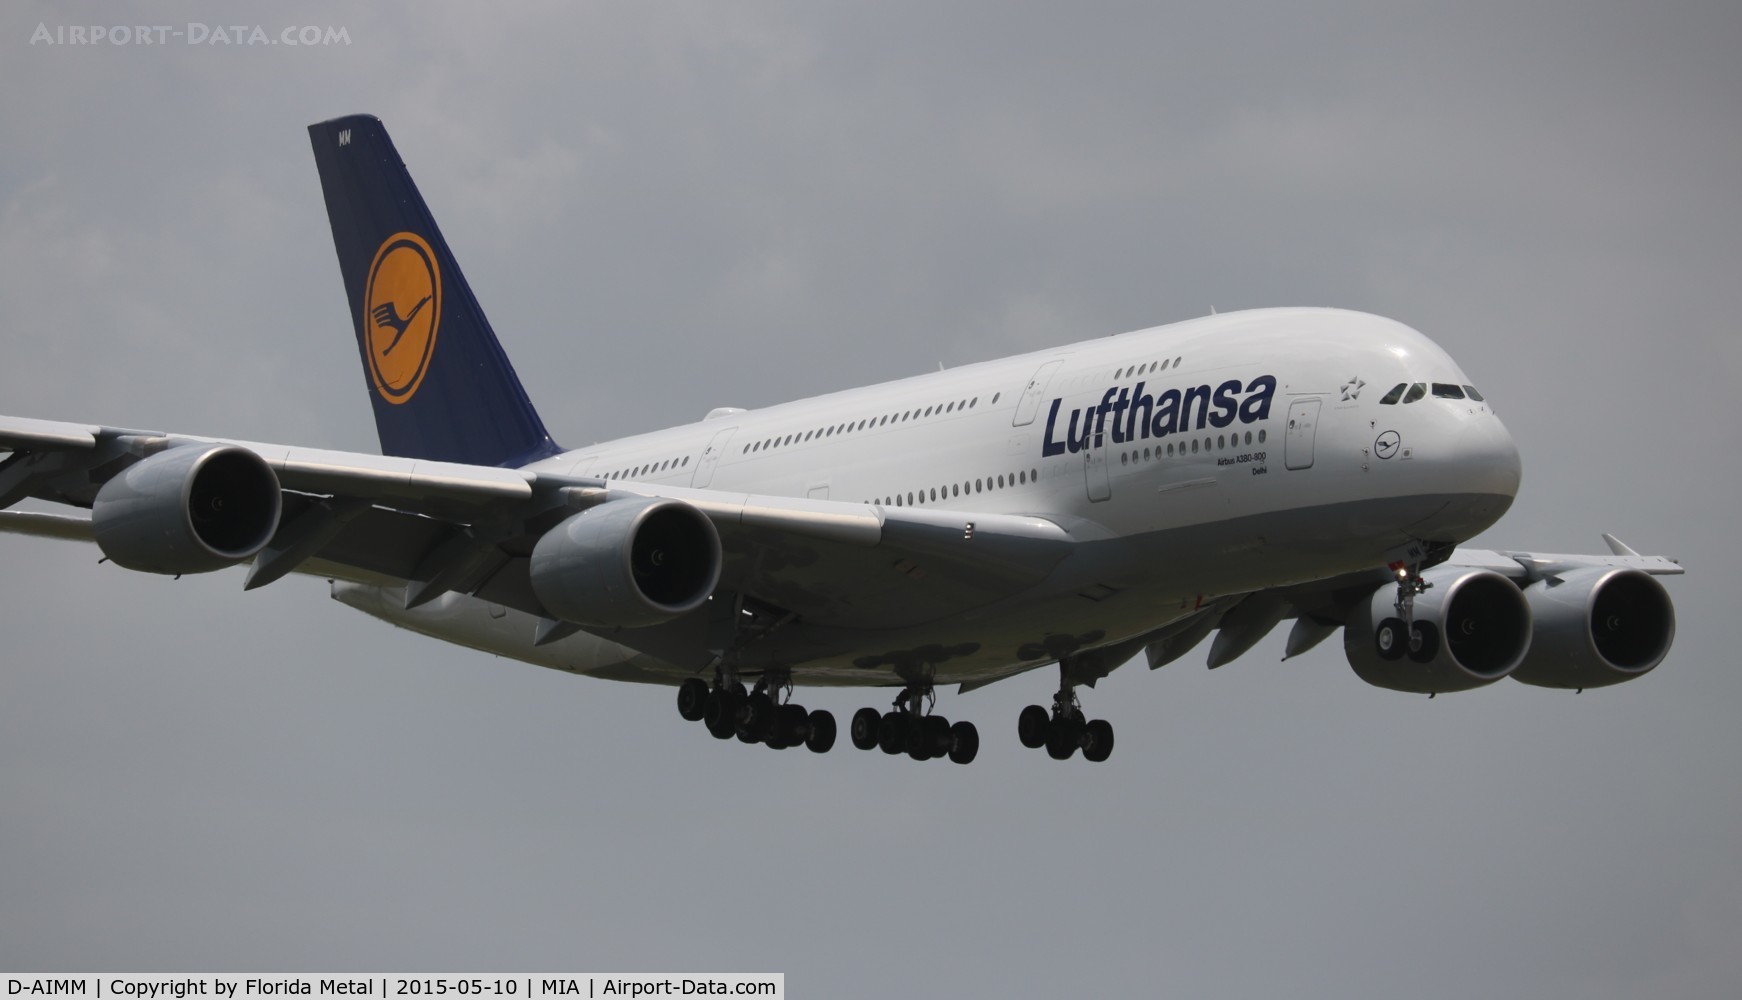 D-AIMM, 2014 Airbus A380-841 C/N 175, Lufthansa